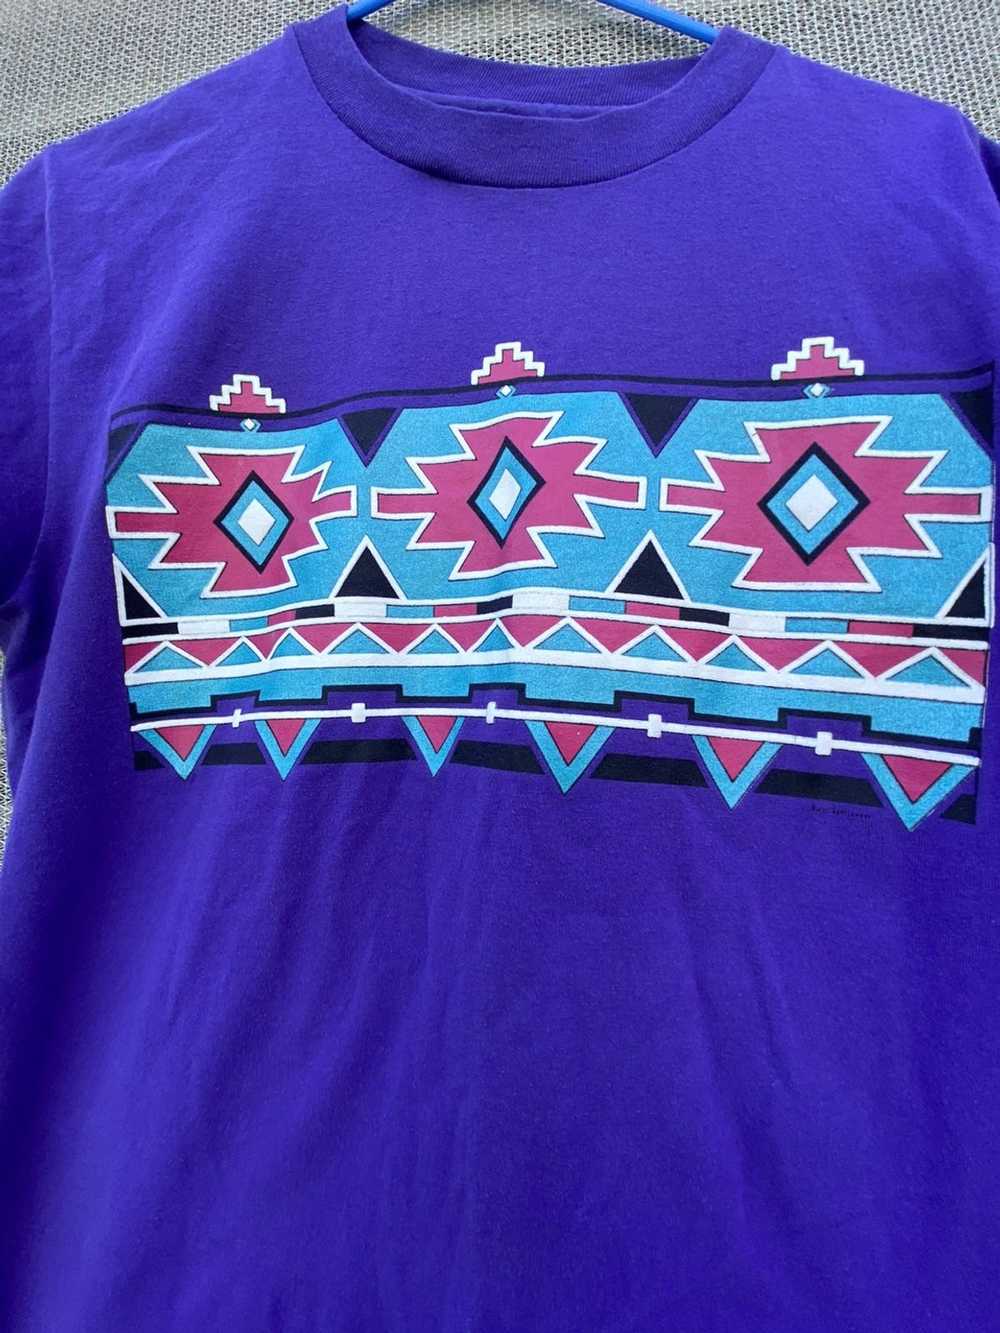 Vintage Vintage Single Stitch Aztec Print T shirt. - image 2